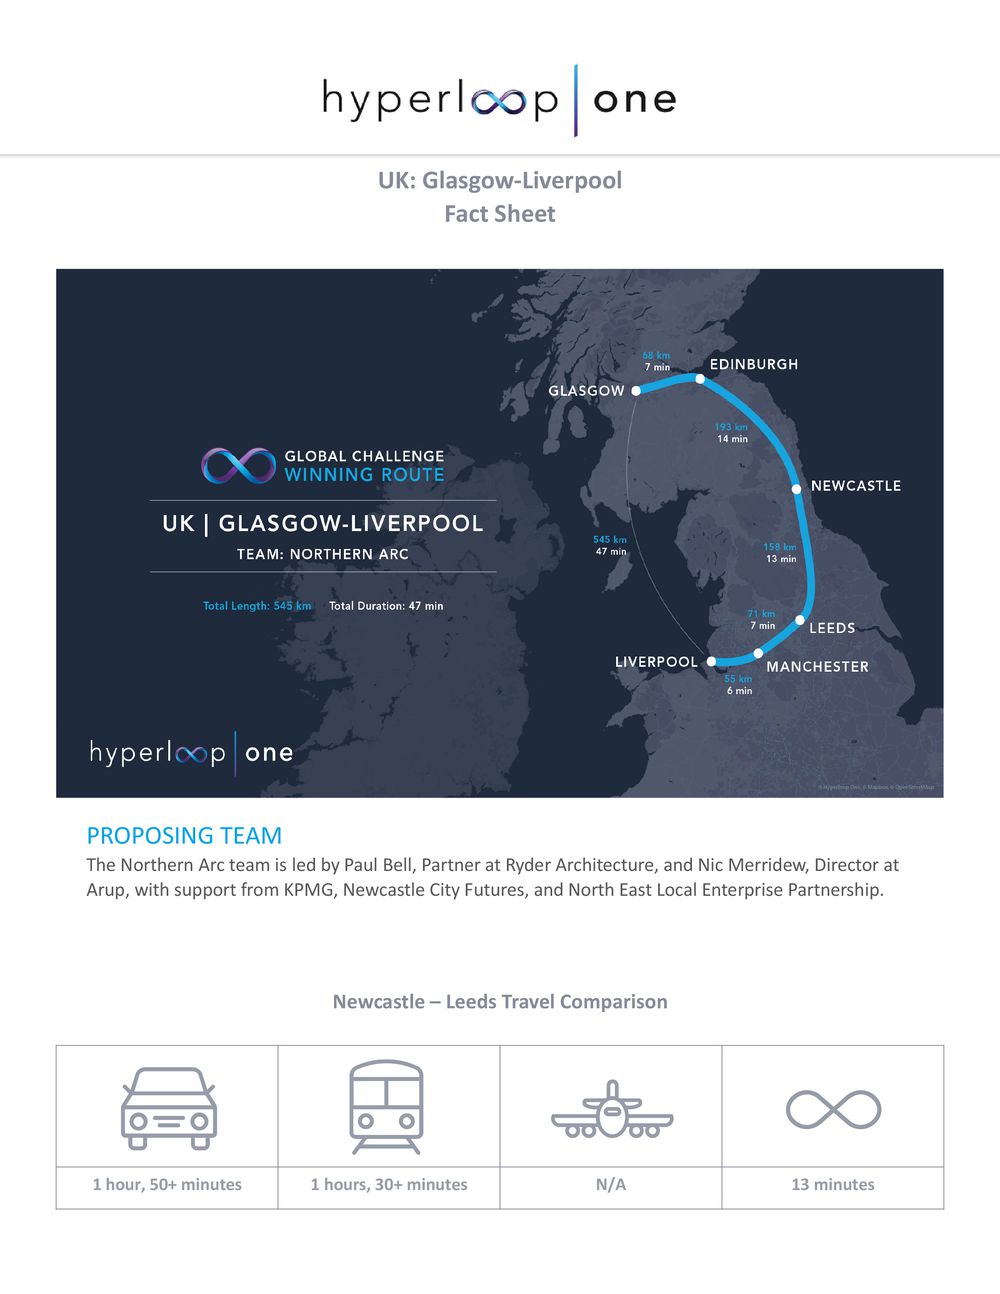 InnoTech Ukraine: Определены 10 маршрутов Hyperloop в разных уголках мира